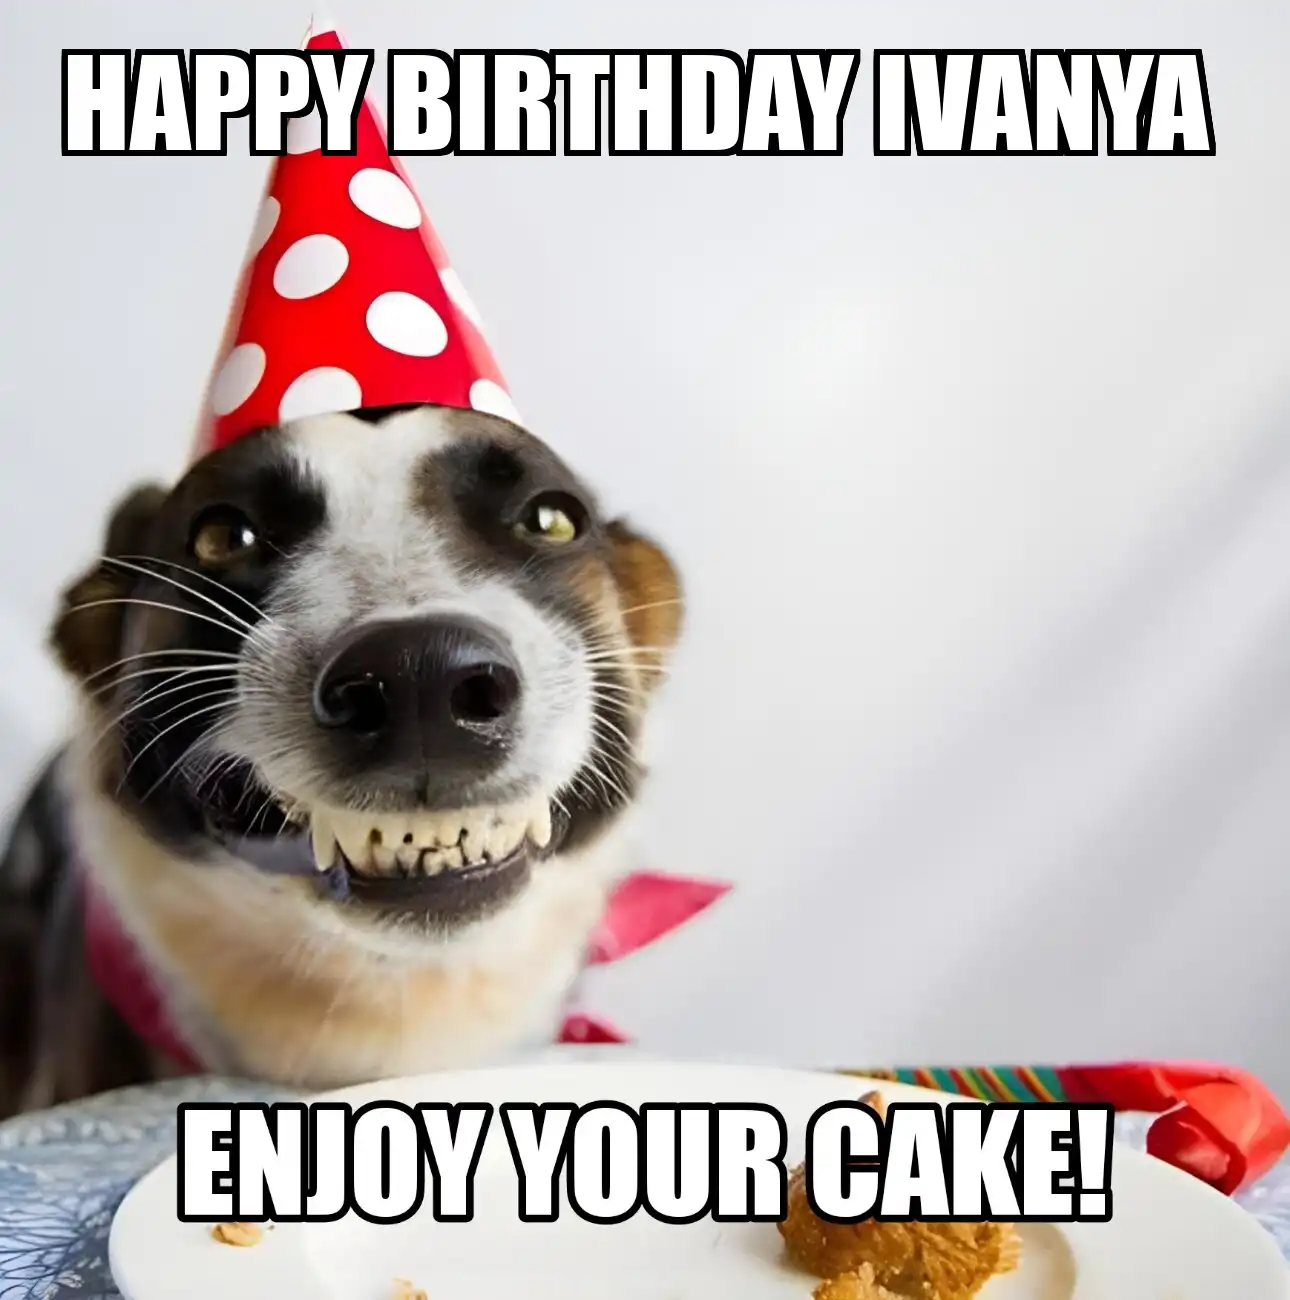 Happy Birthday Ivanya Enjoy Your Cake Dog Meme